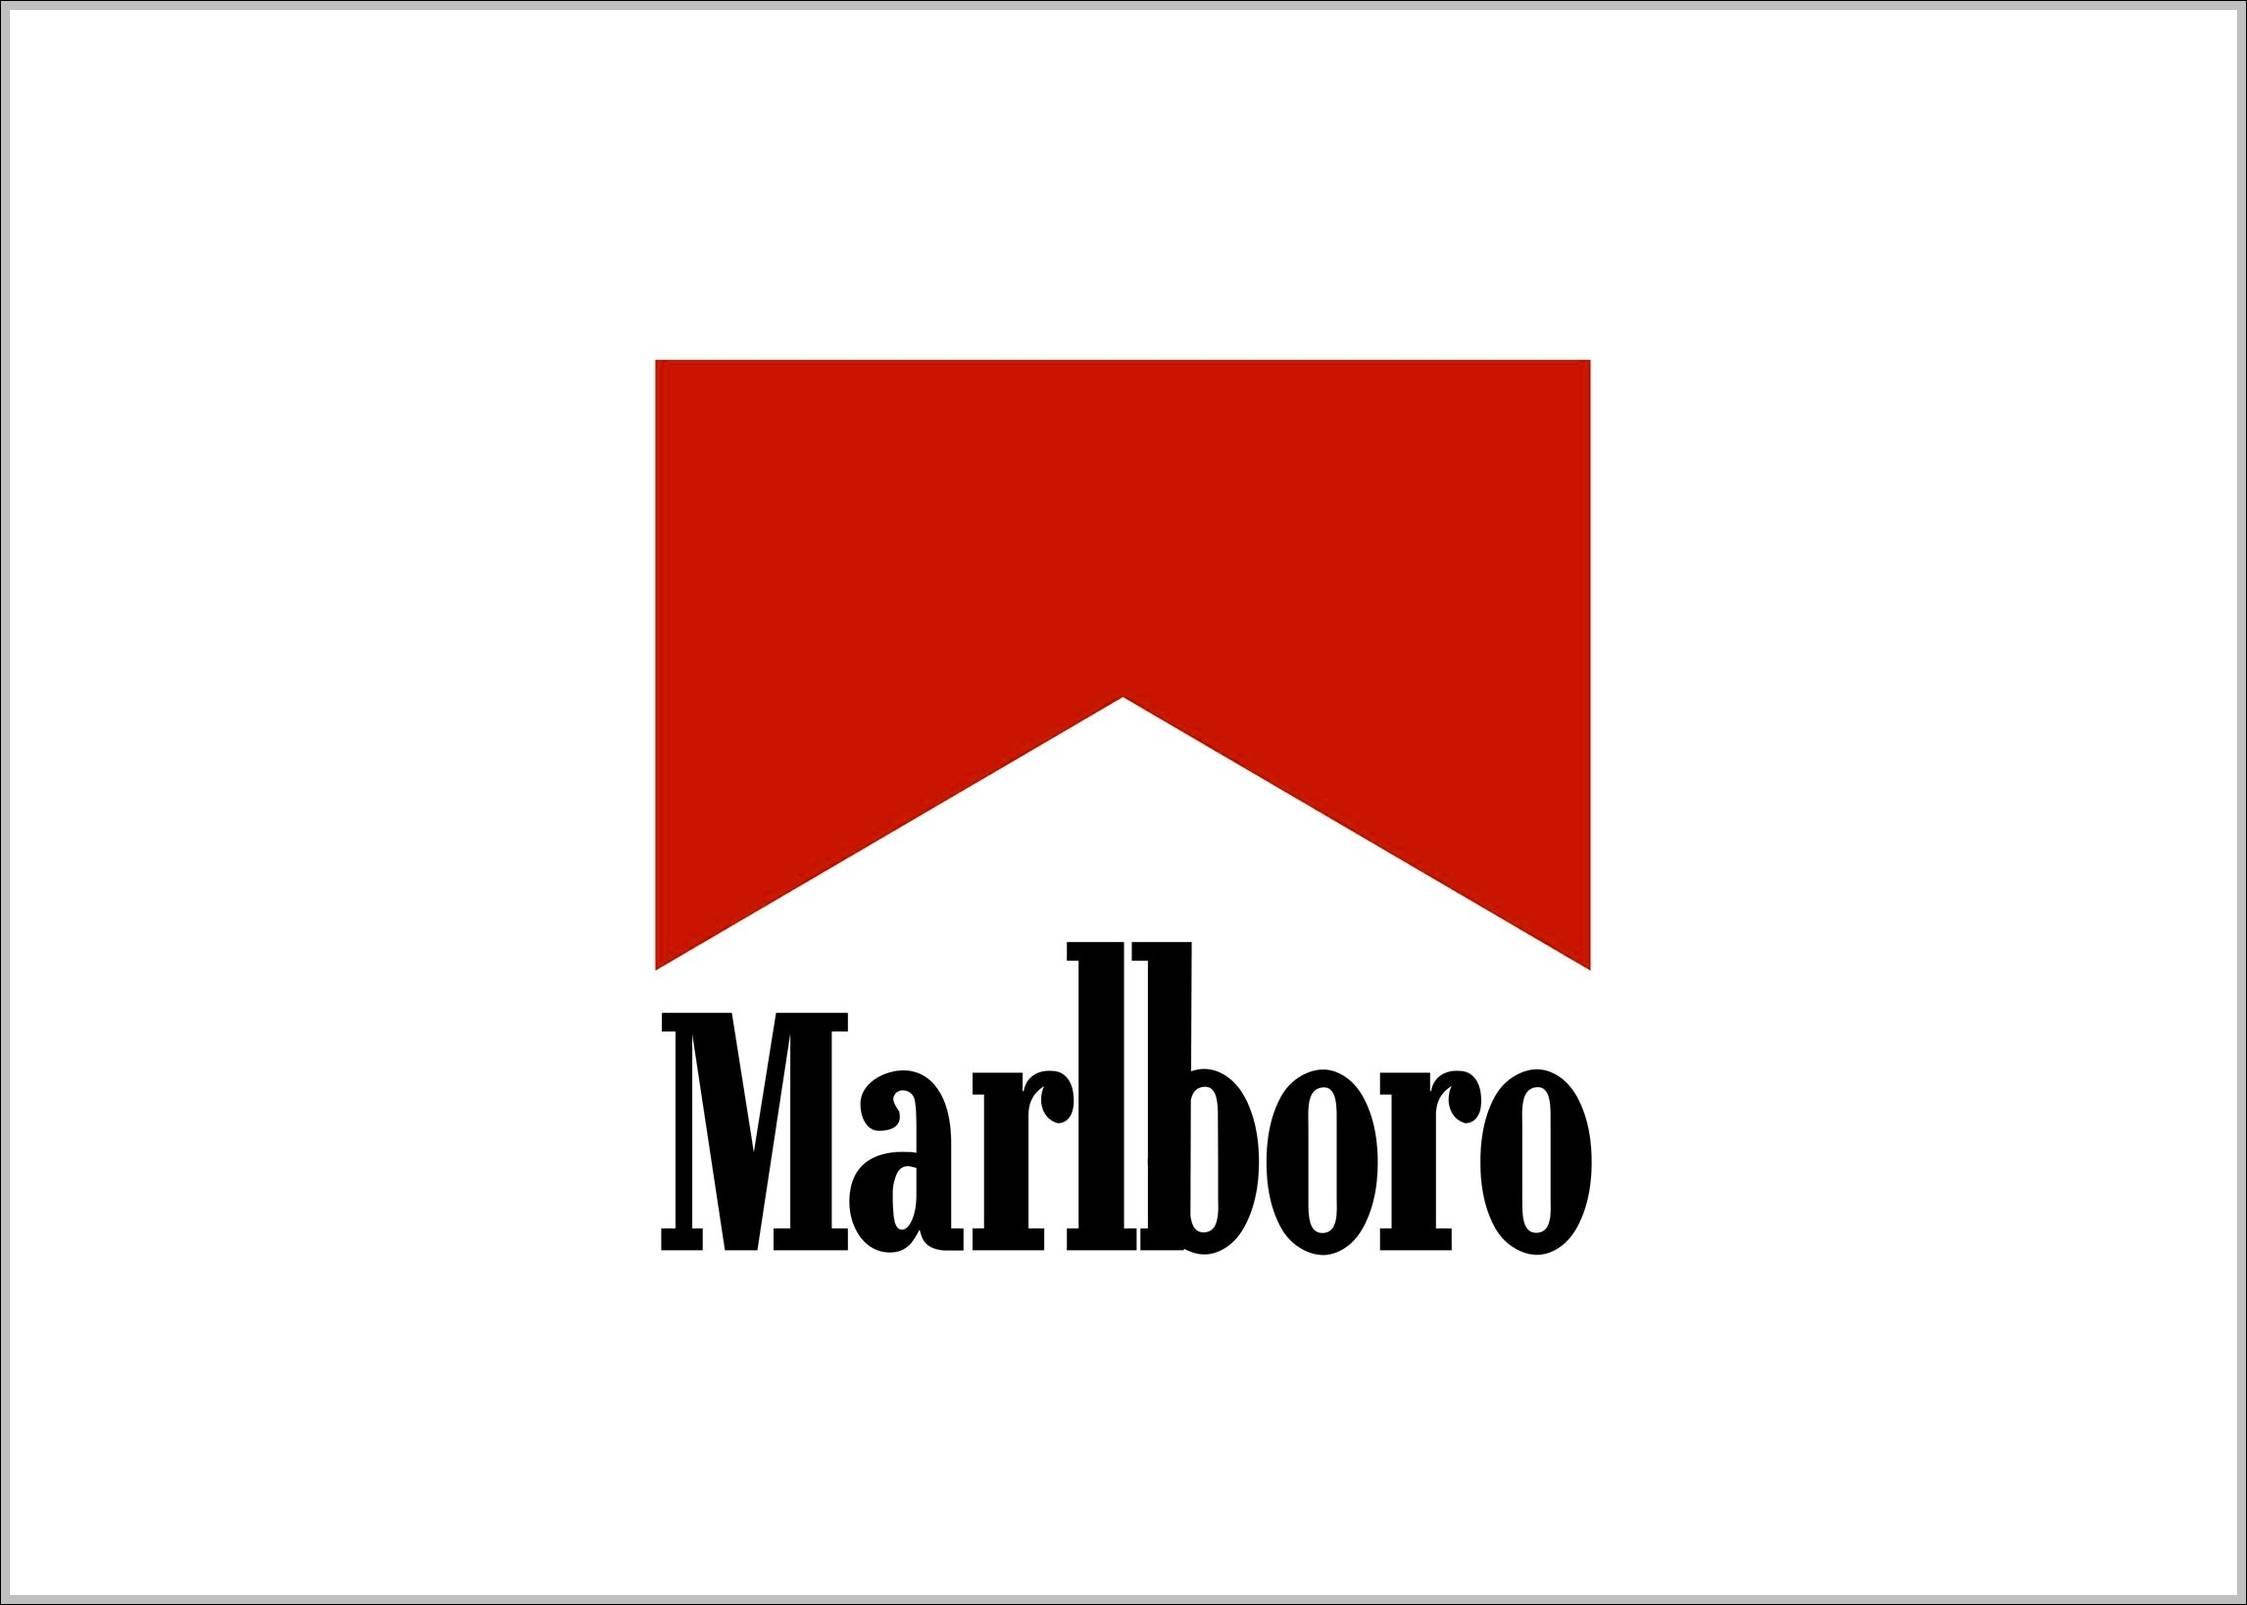 Marlboro logo